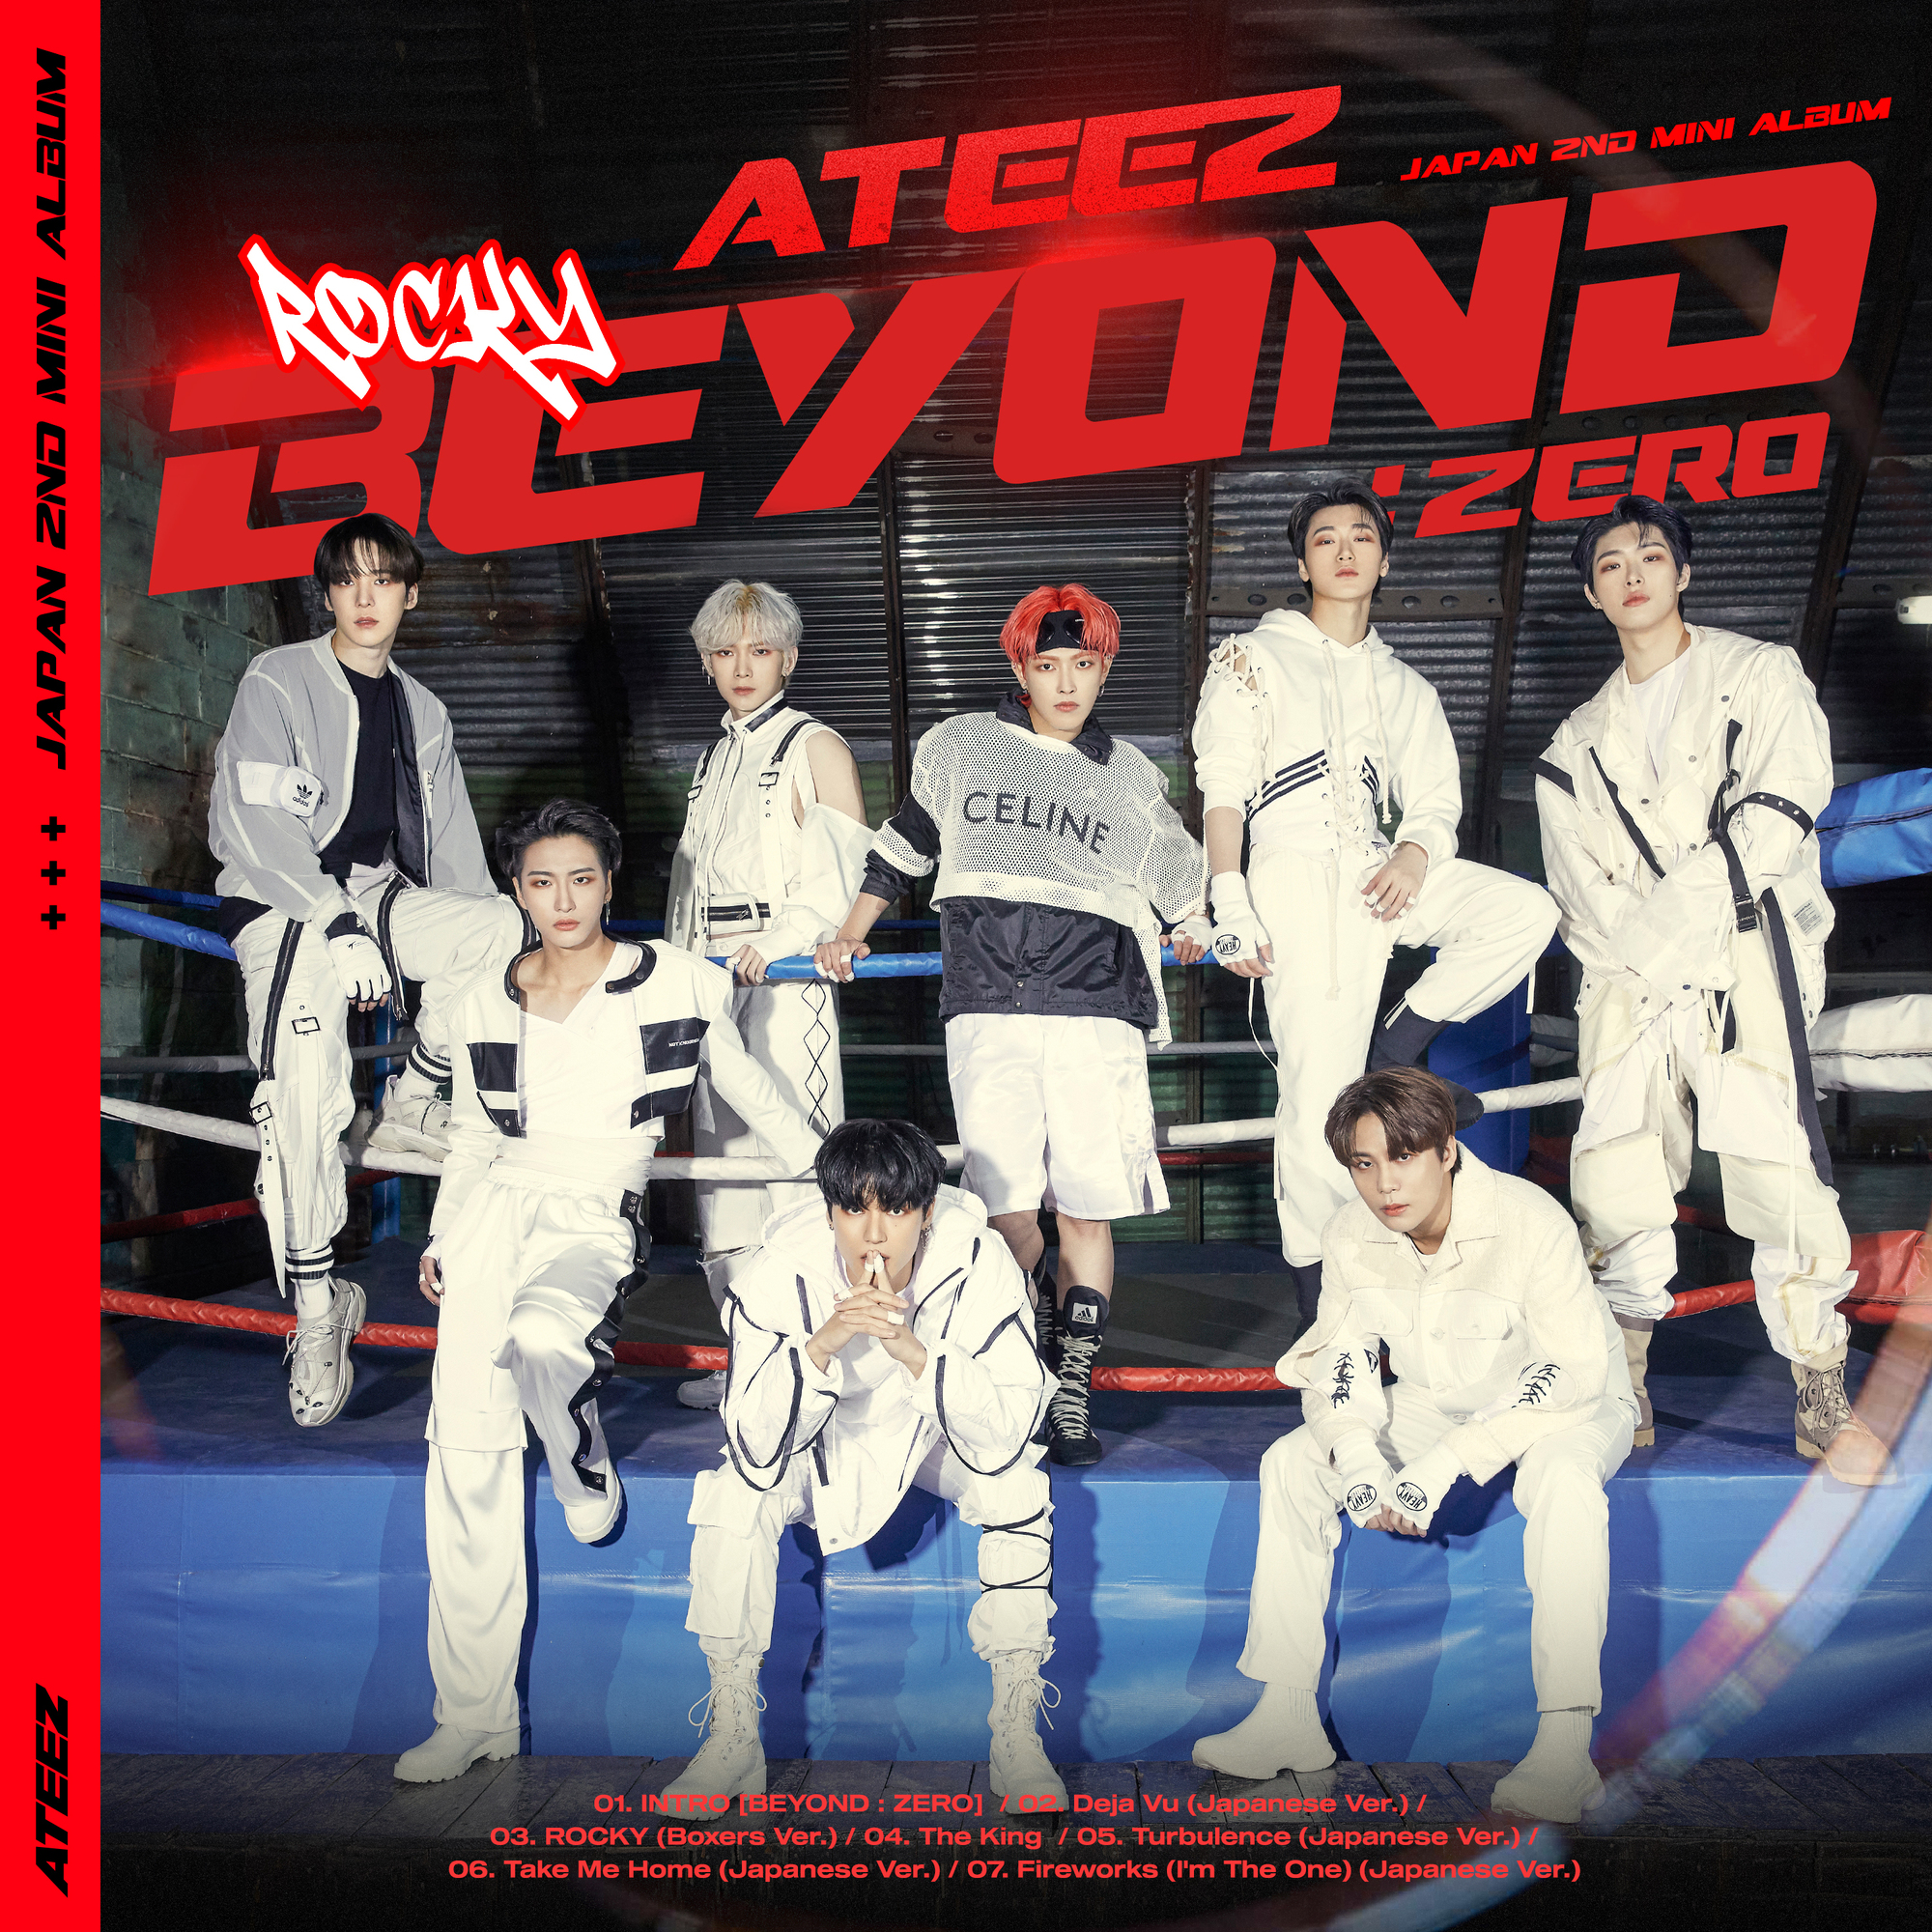 5月25日にATEEZ JAPAN 2ND MINI ALBUM「BEYOND : ZERO」発売決定 